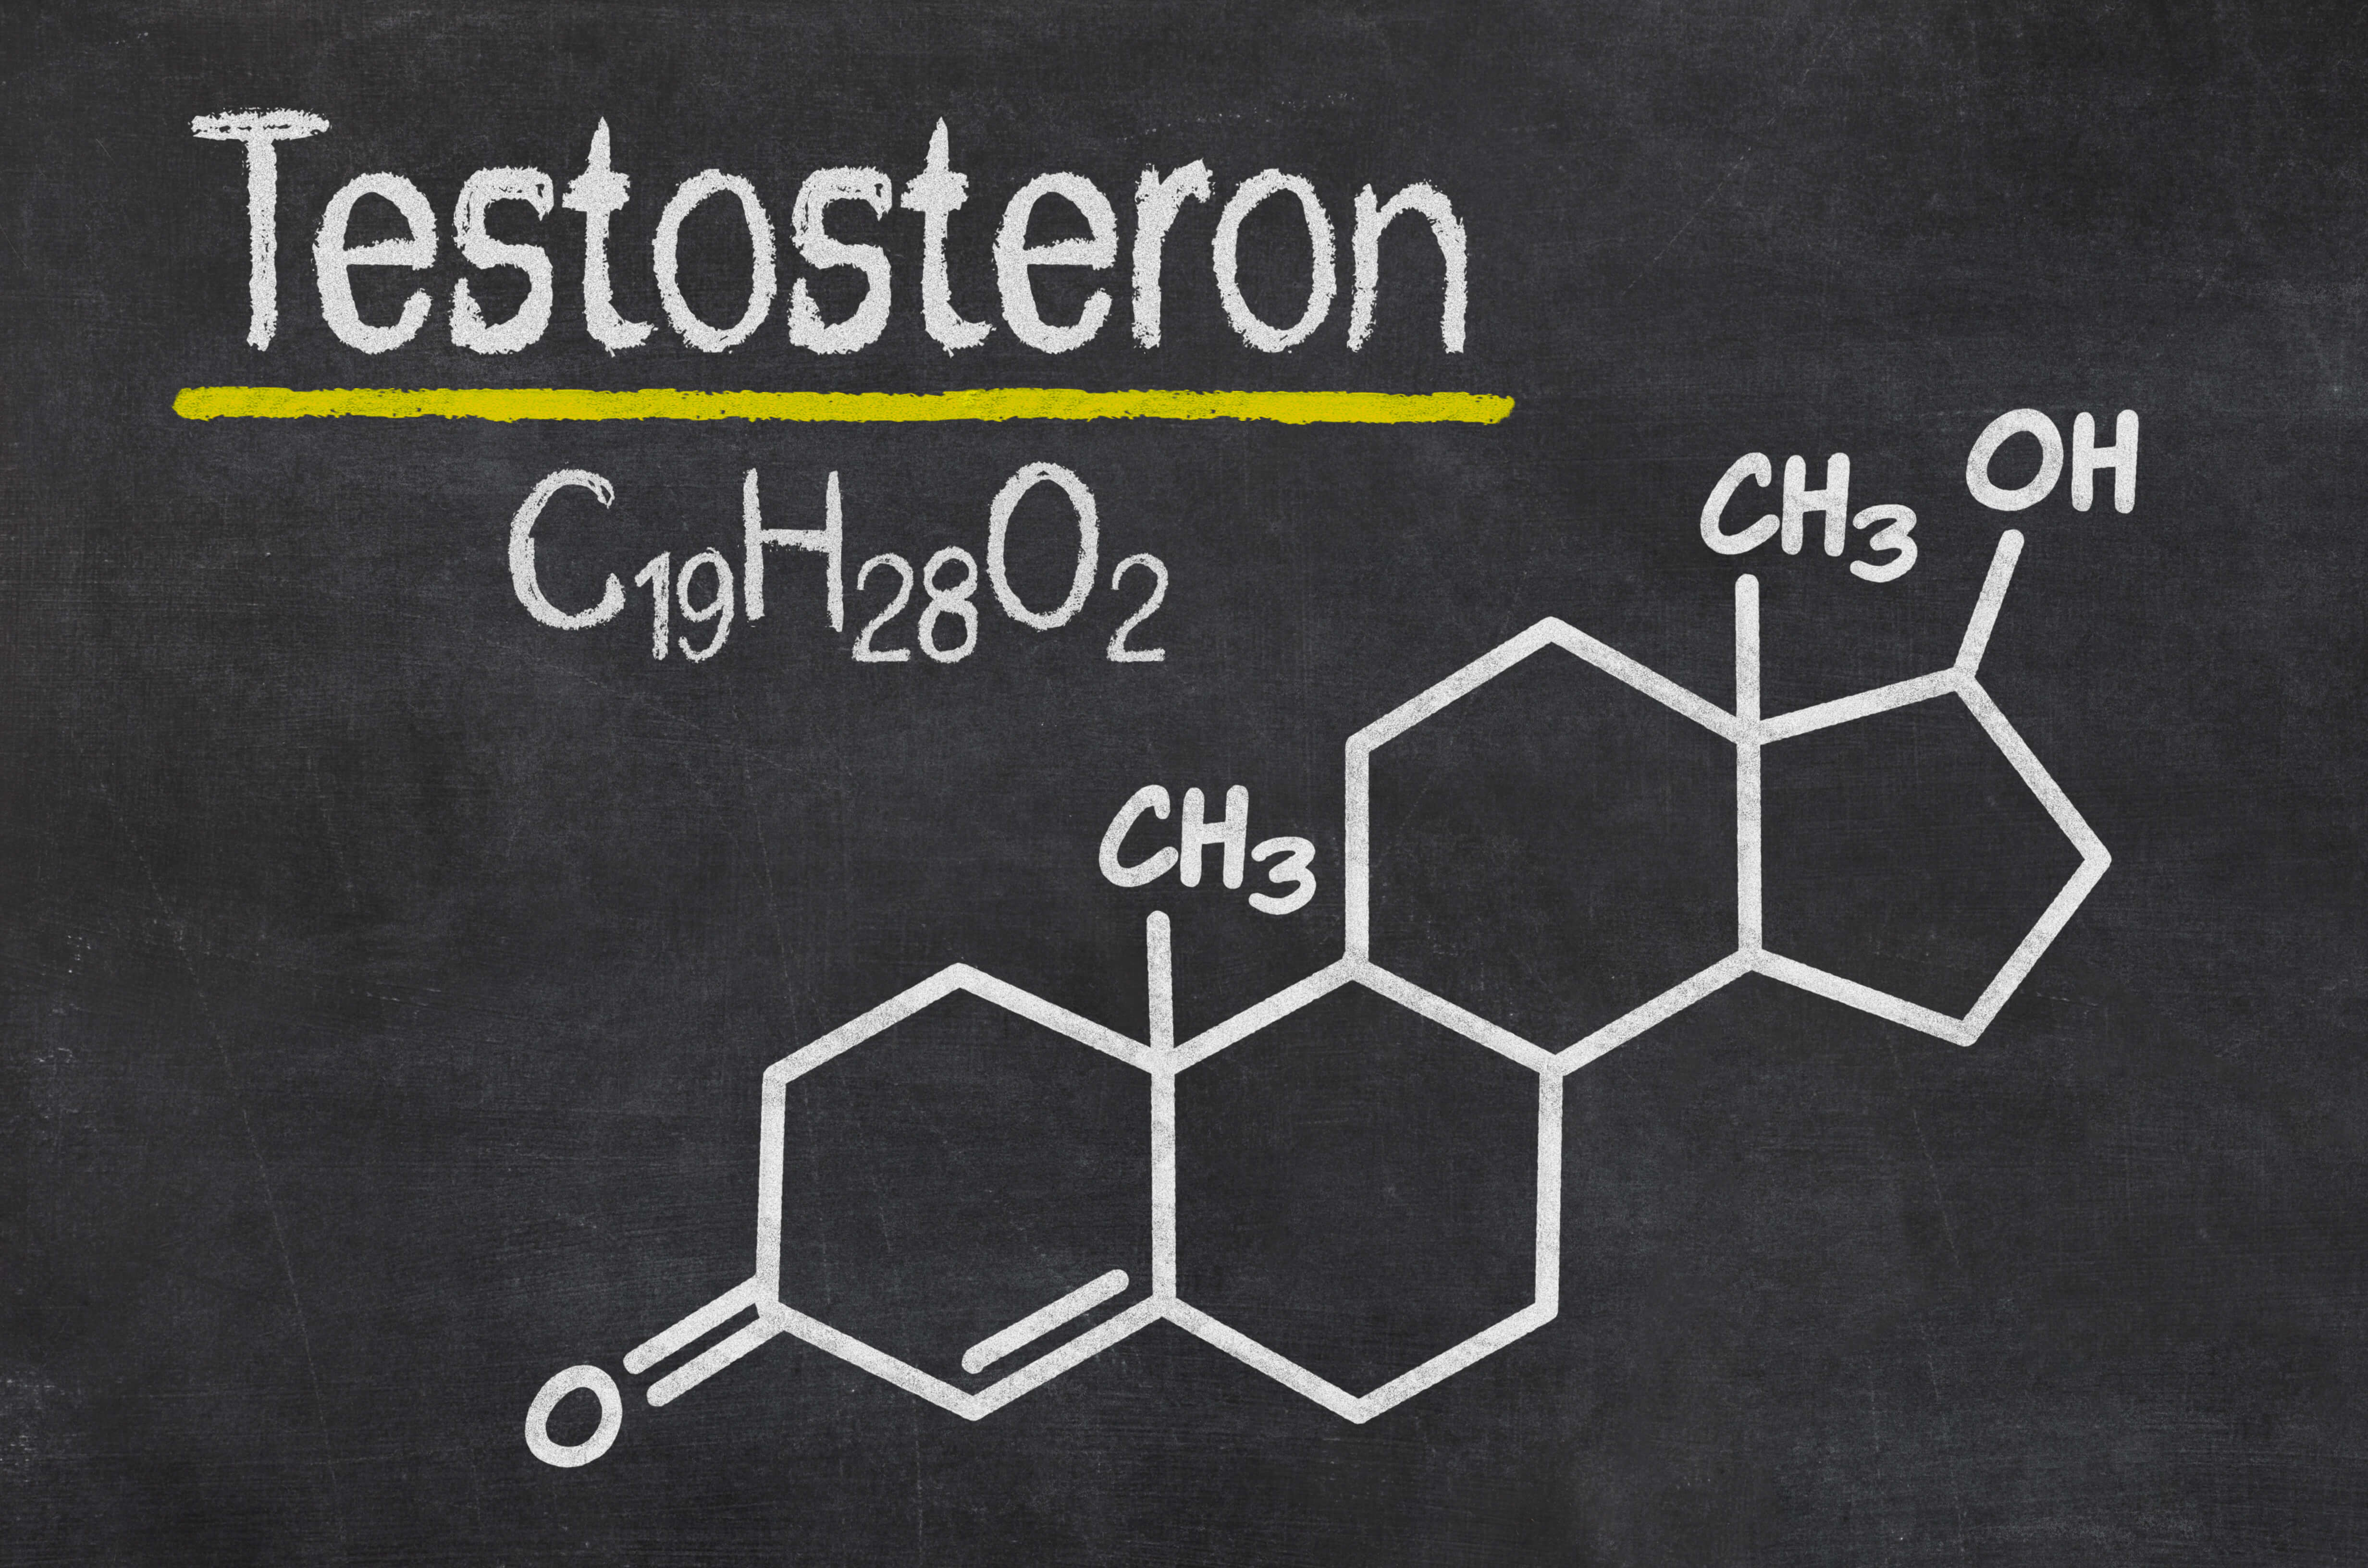 هورمون تستسترون چیست و اندازه گیری آن با کیت تستسترون به چه منظوری انجام می شود